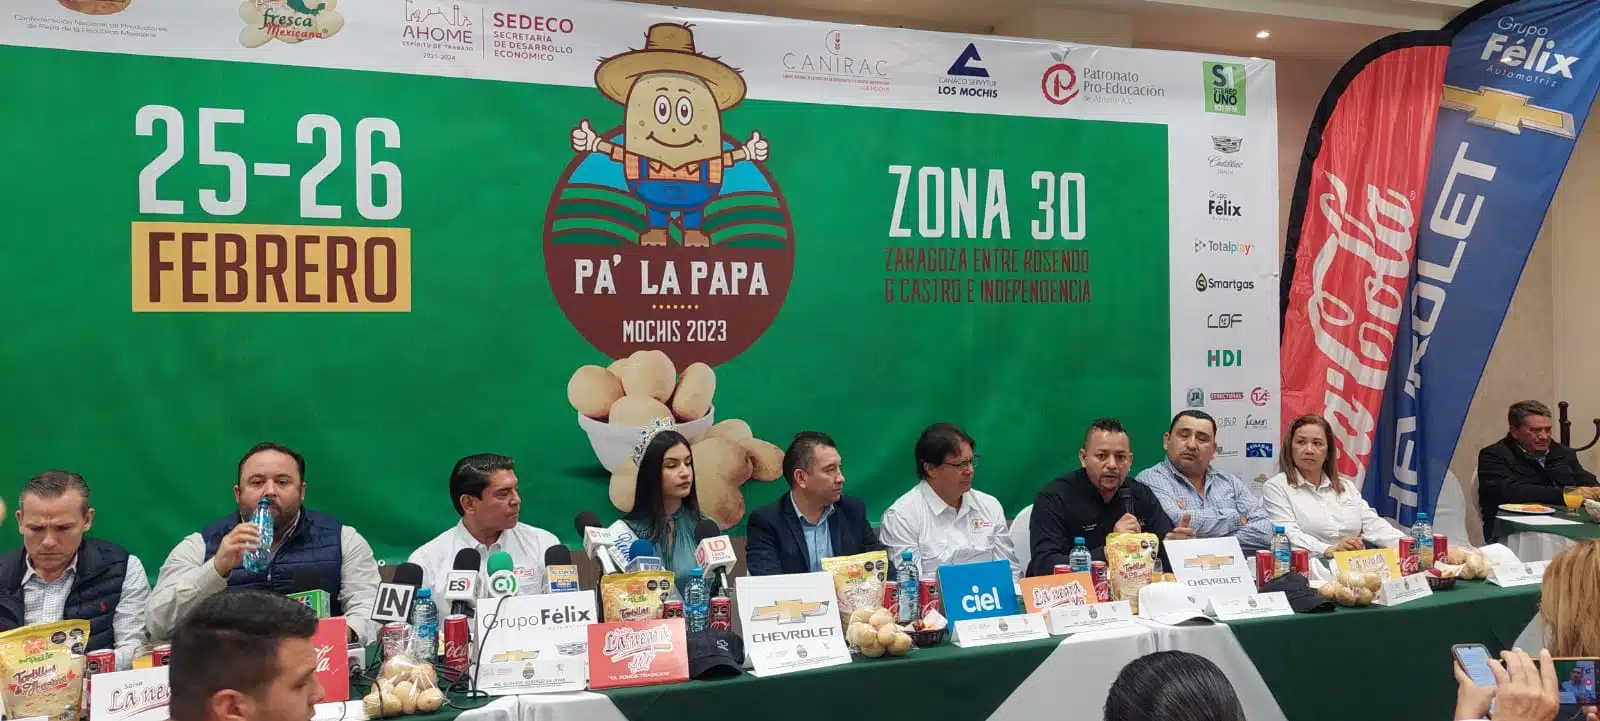 Los Mochis produce la mejor papa de México y tiene su festival este 25 y 26 de febrero: González